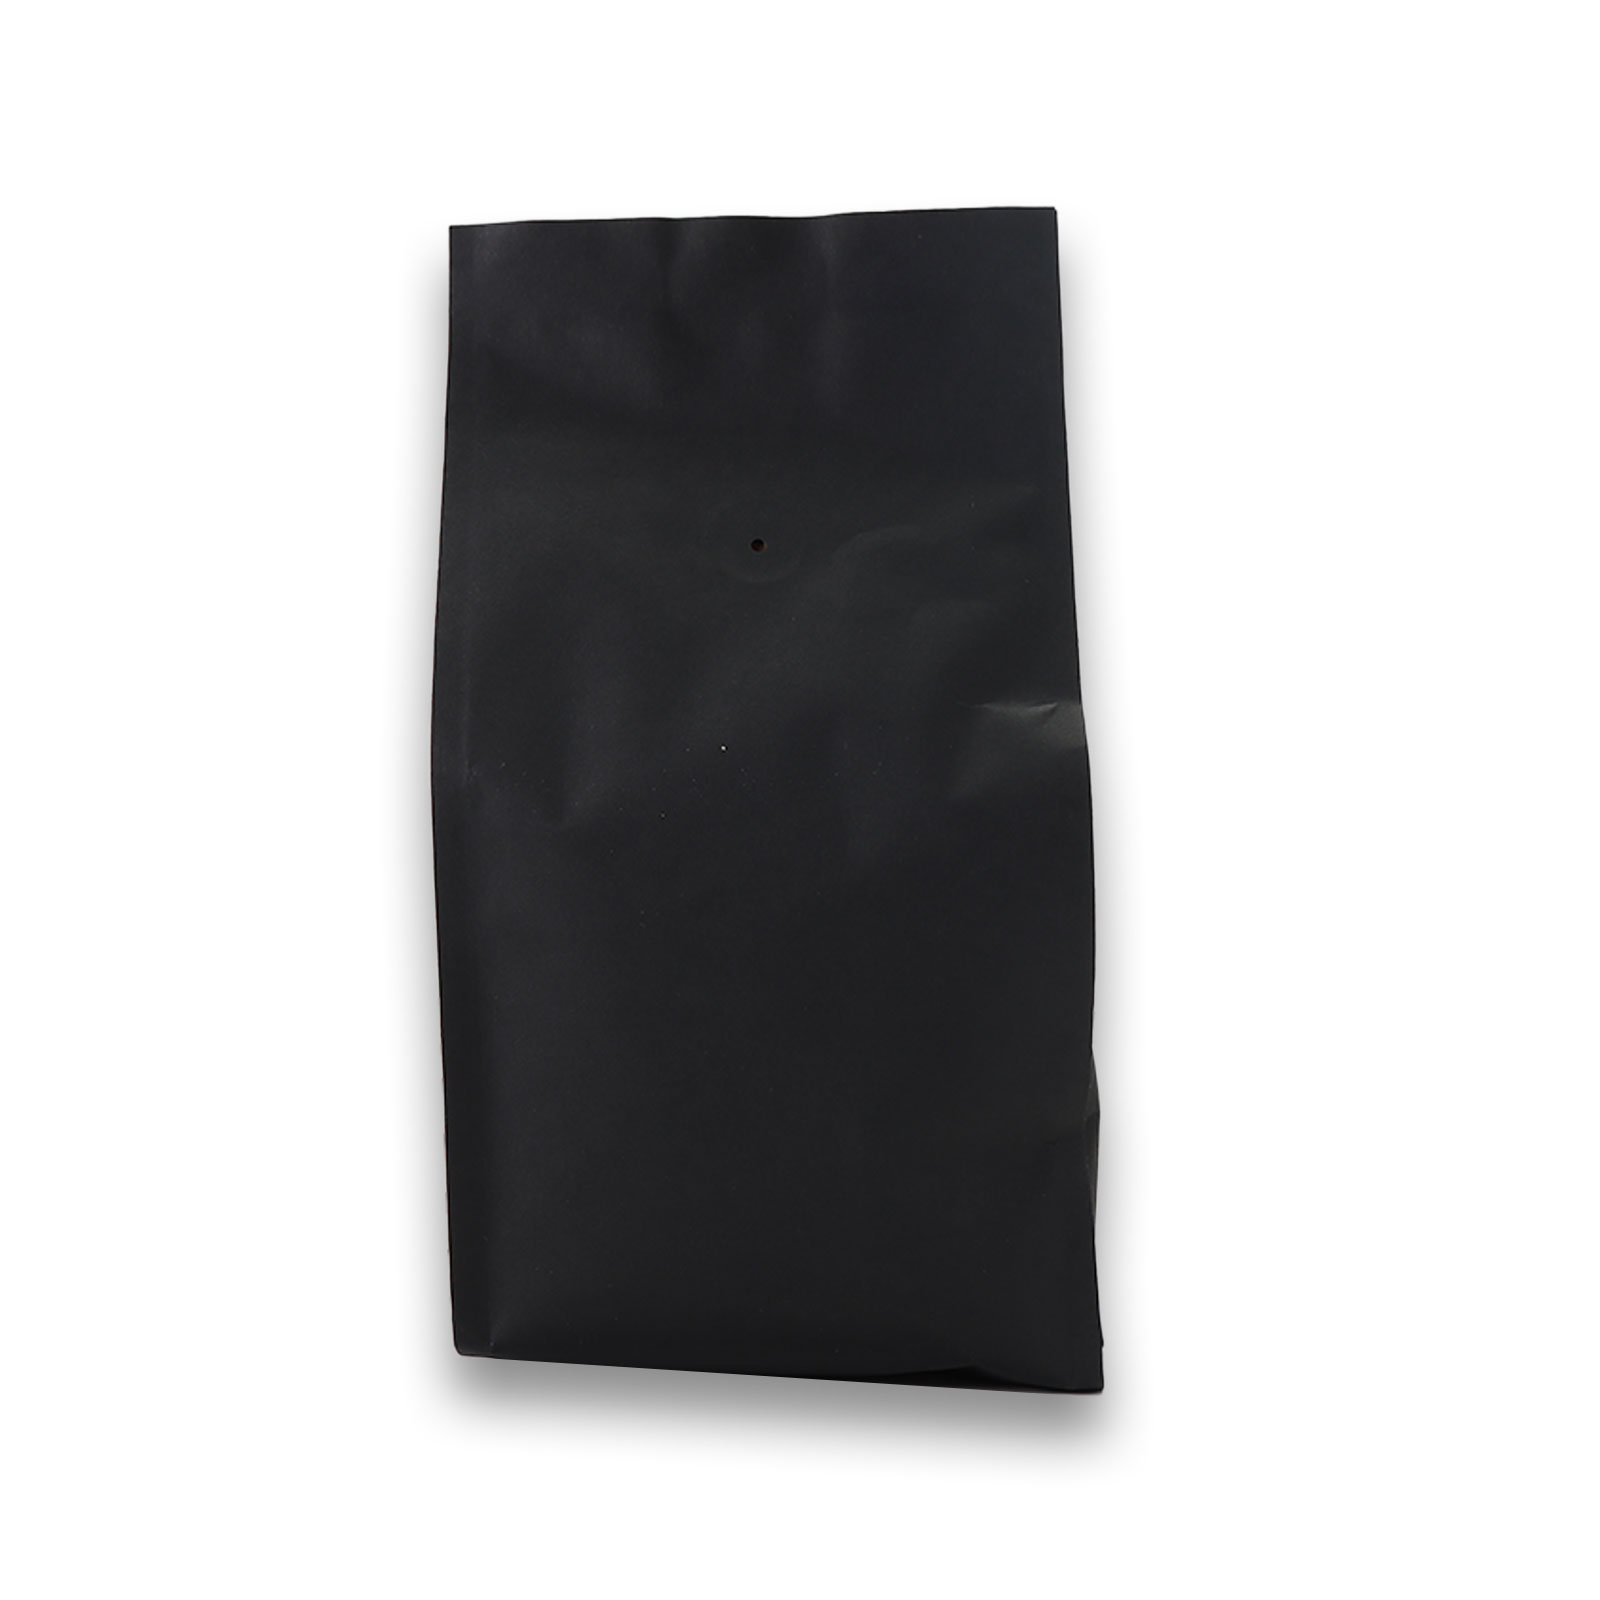 Rückseite der Kaffeebohnen in ihrer schwarzen Verpackung.